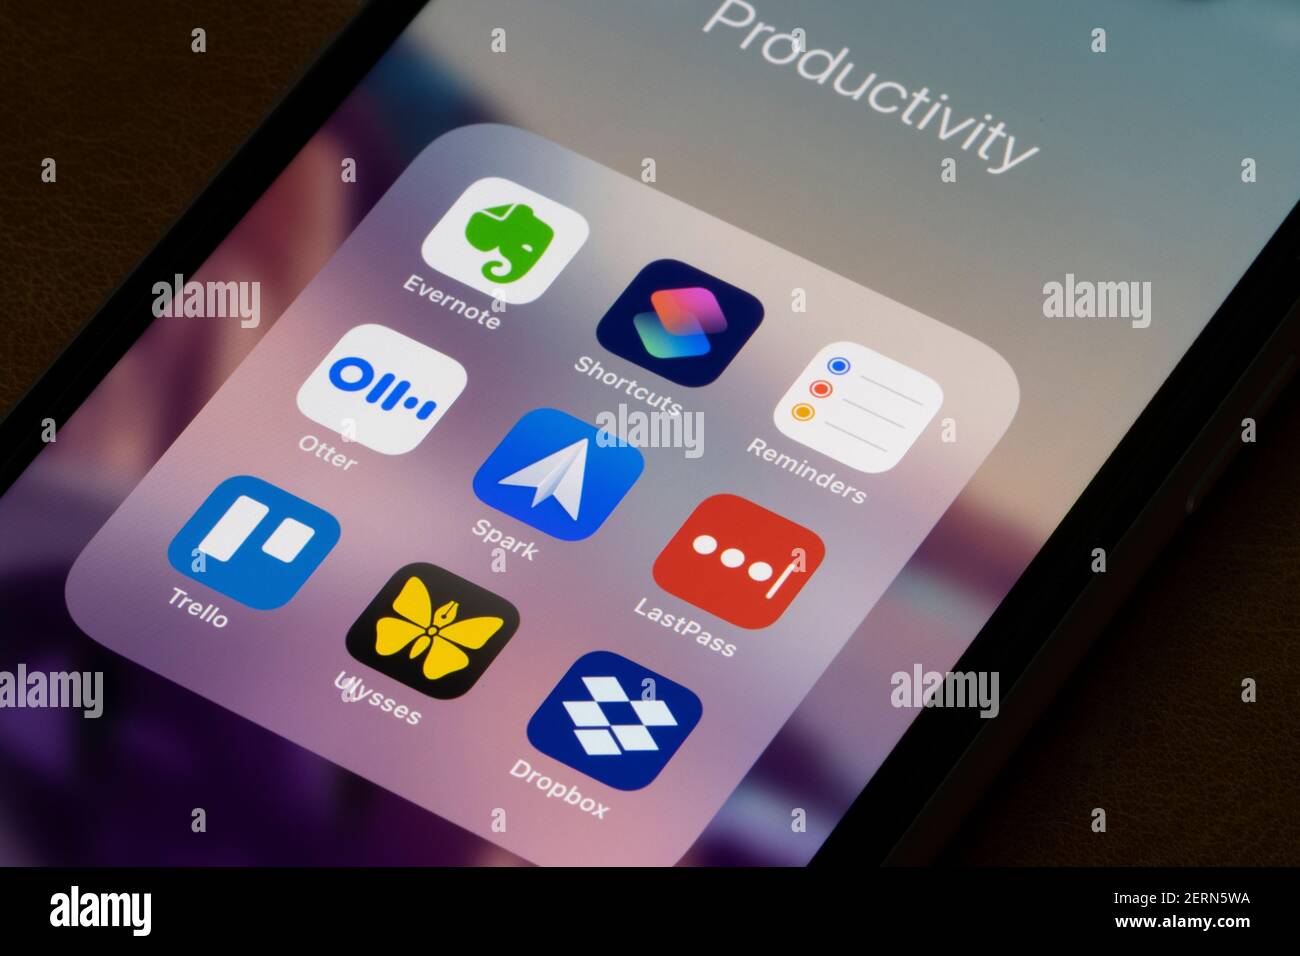 Verschiedene Produktivitäts-Apps sind auf einem iPhone zu sehen - Evernote, Apple Shortcuts, Erinnerungen, Otter, Spark, LastPass, Trello, Ulysses und Dropbox. Stockfoto